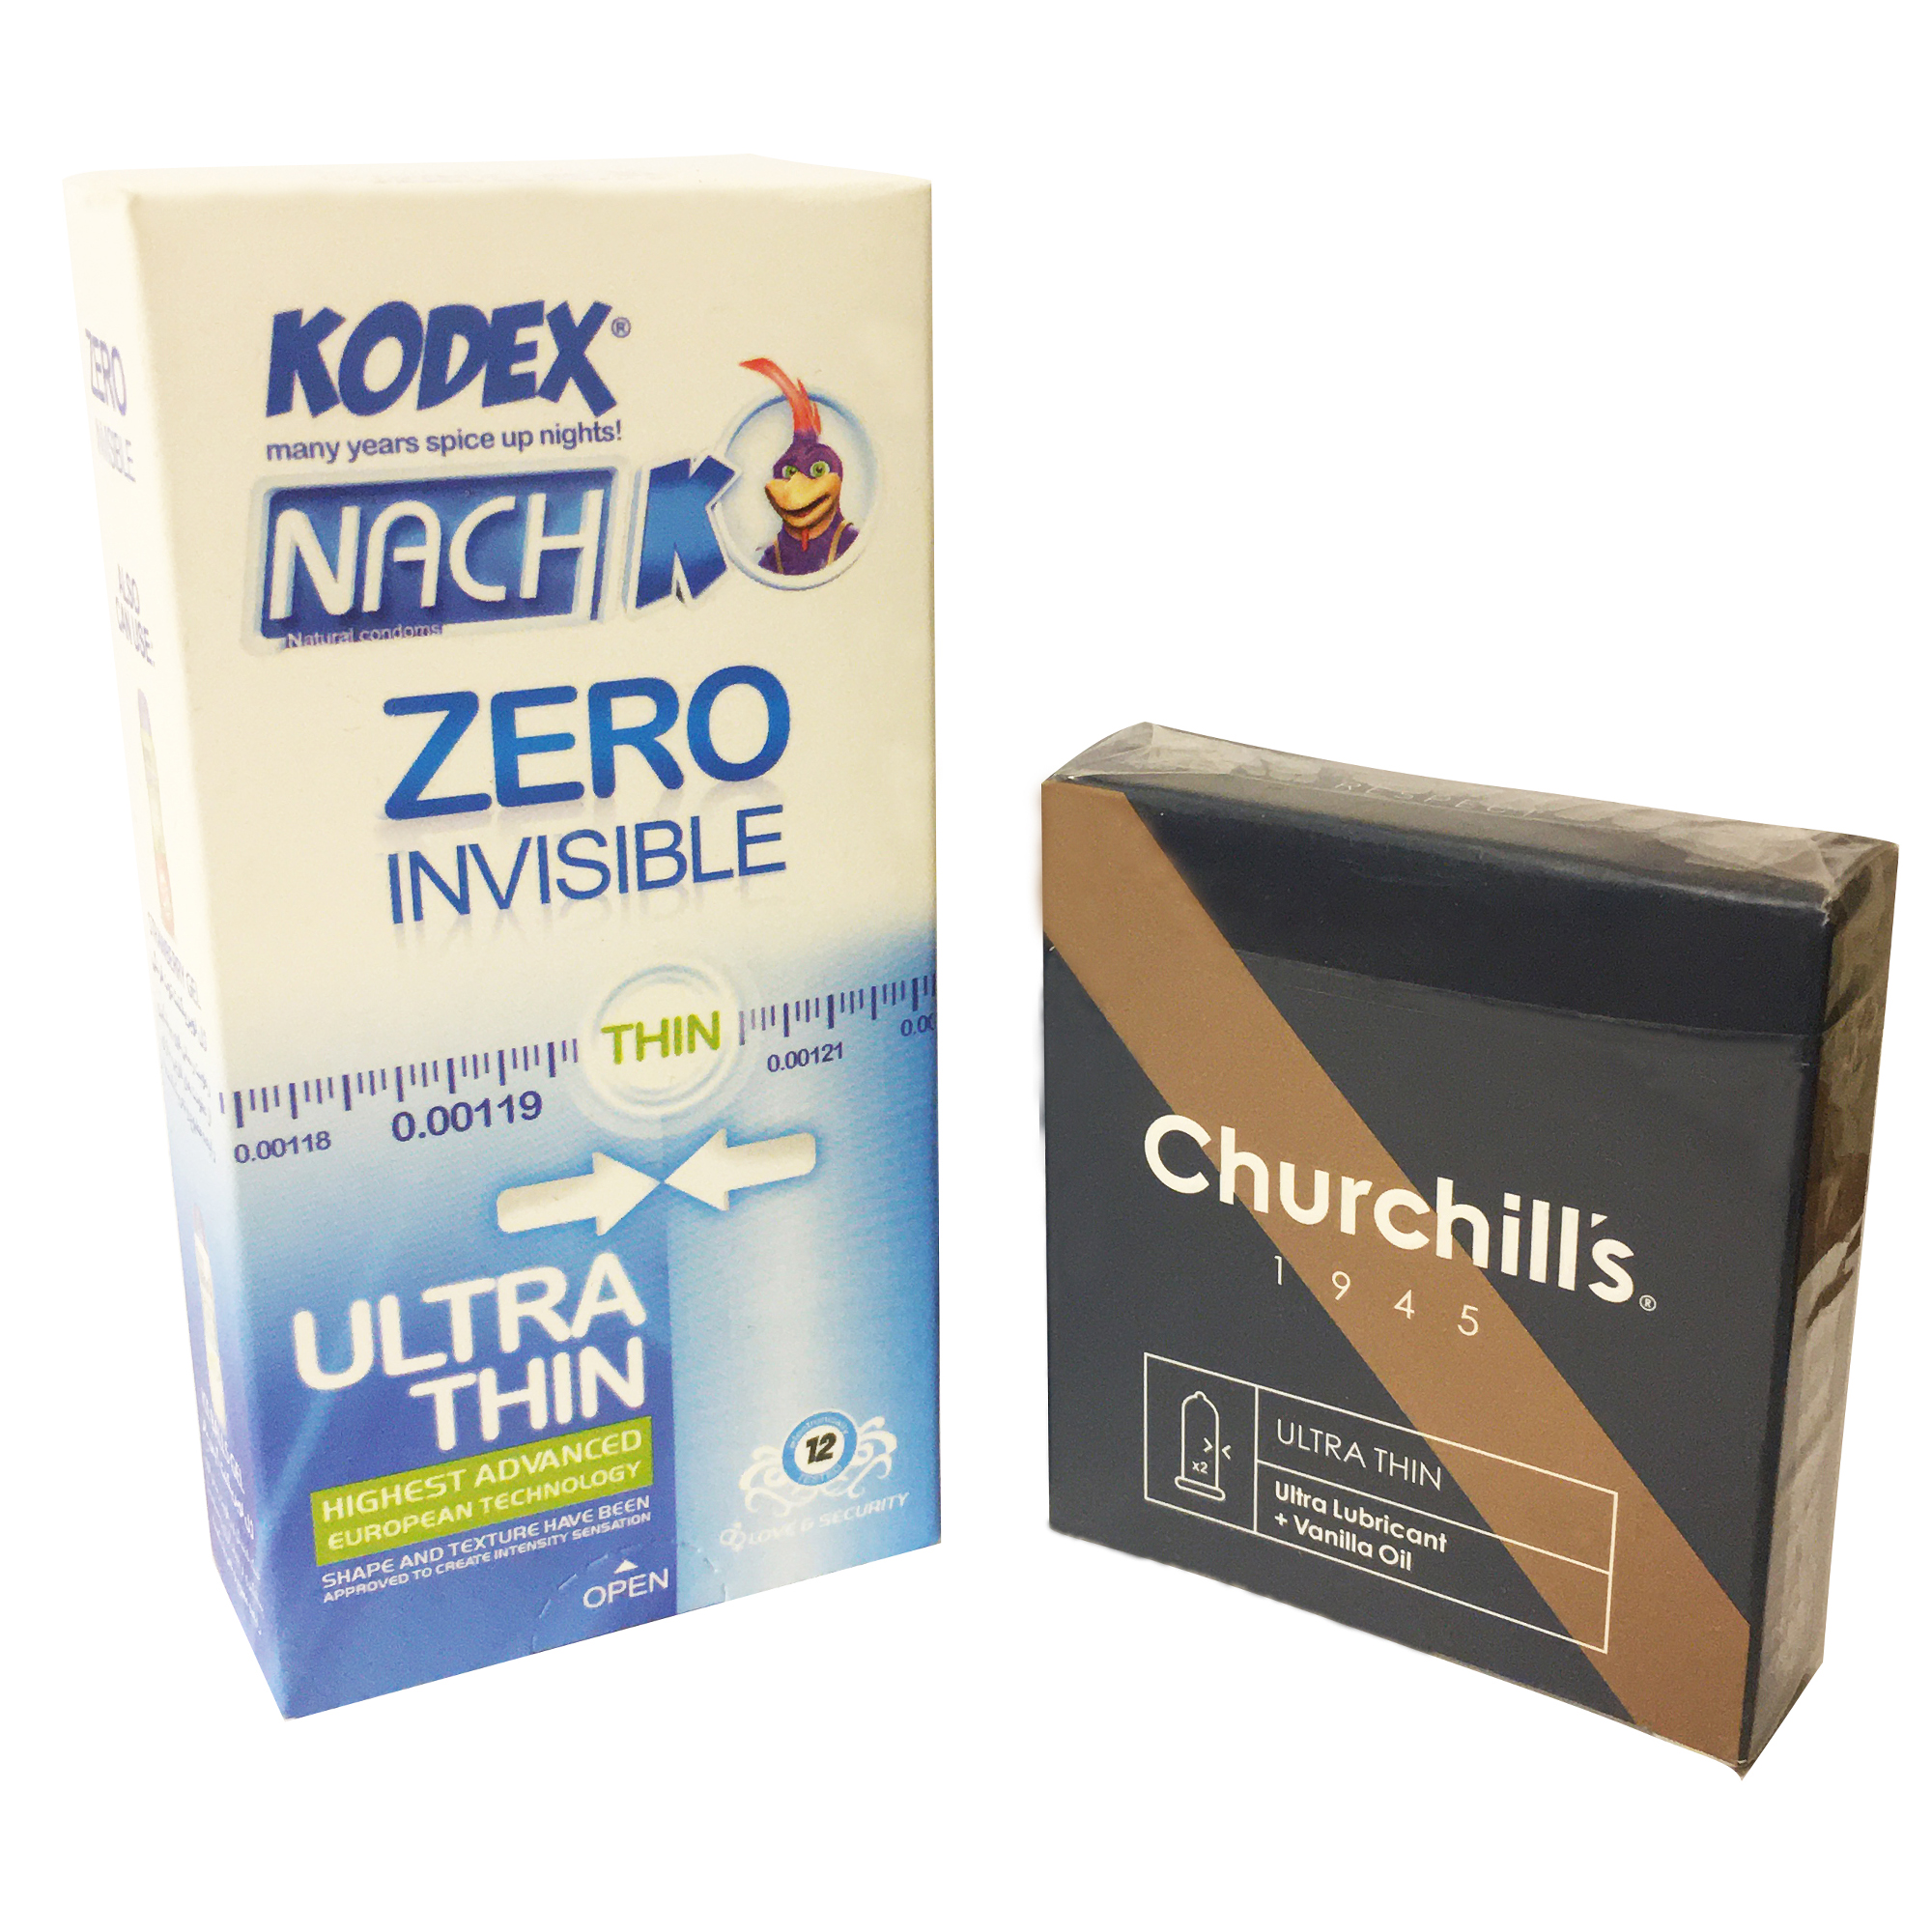 کاندوم ناچ کدکس مدل Zero Invisible بسته 12 عددی به همراه کاندوم چرچیلز مدل ULTRA THIN بسته 3 عددی